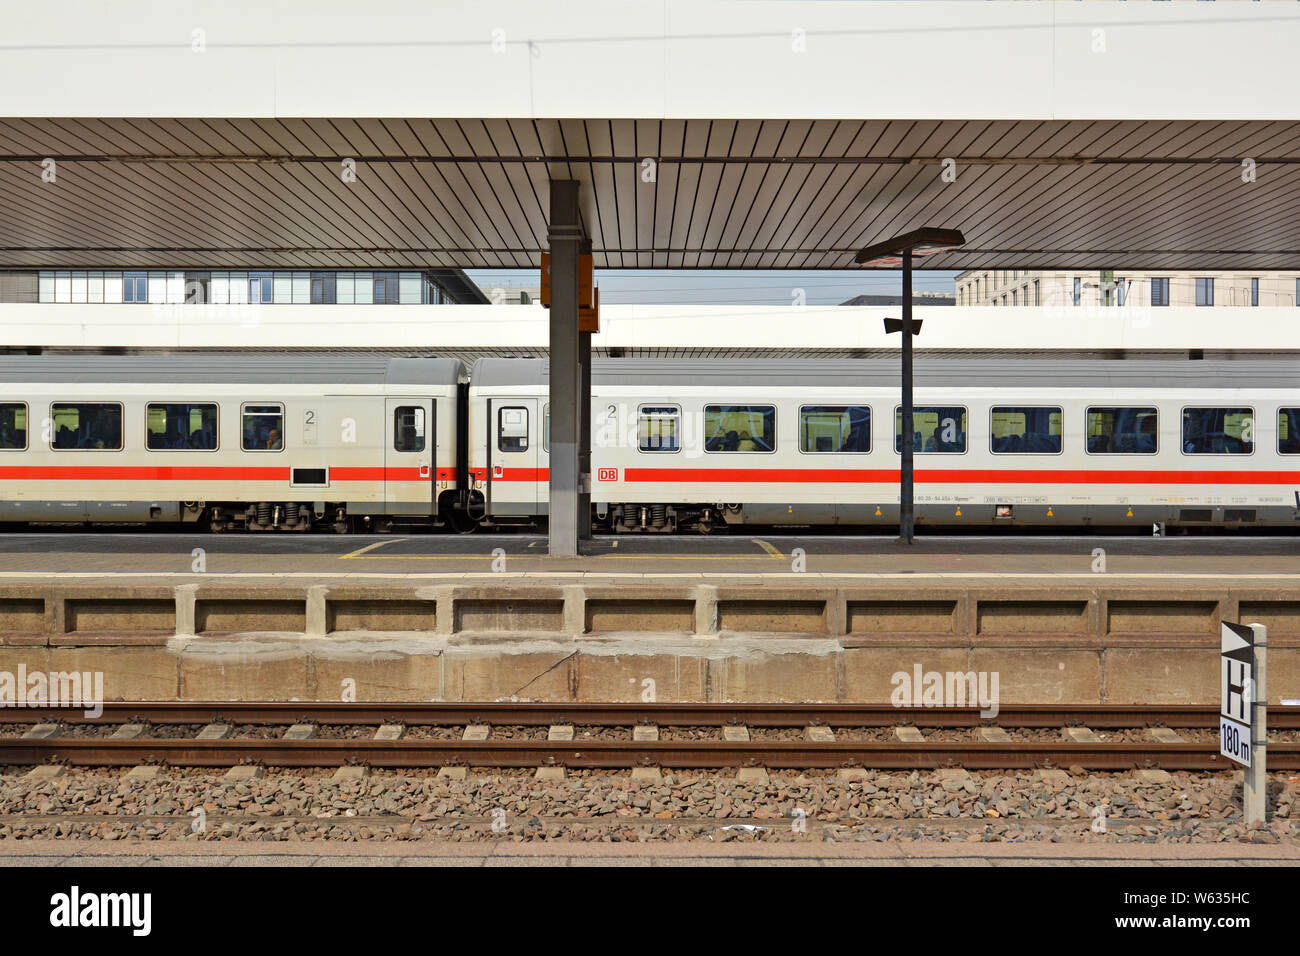 Seitenansicht des Waggons der Zug namens "Intercity", der höchste Bahnhof Einstufung in Deutschland, vorbei an Bahnhof Stockfoto